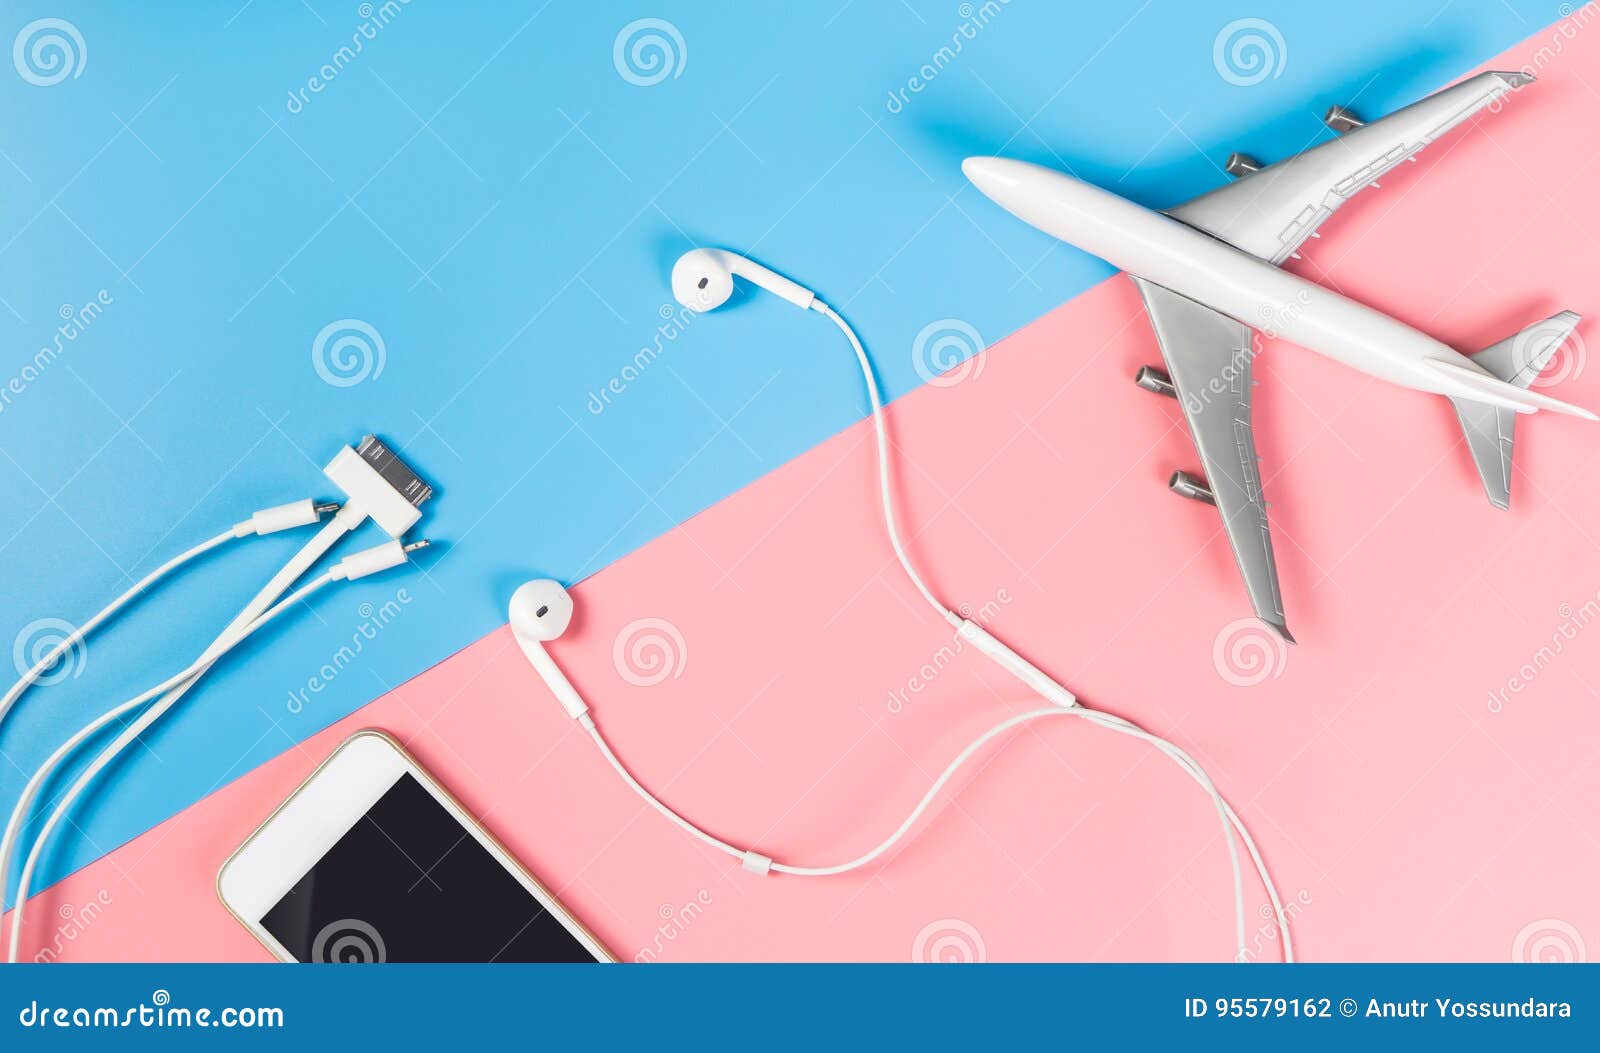 Accesorios De Smartphone Para Viajar En El Avión En Azul Y Rosa